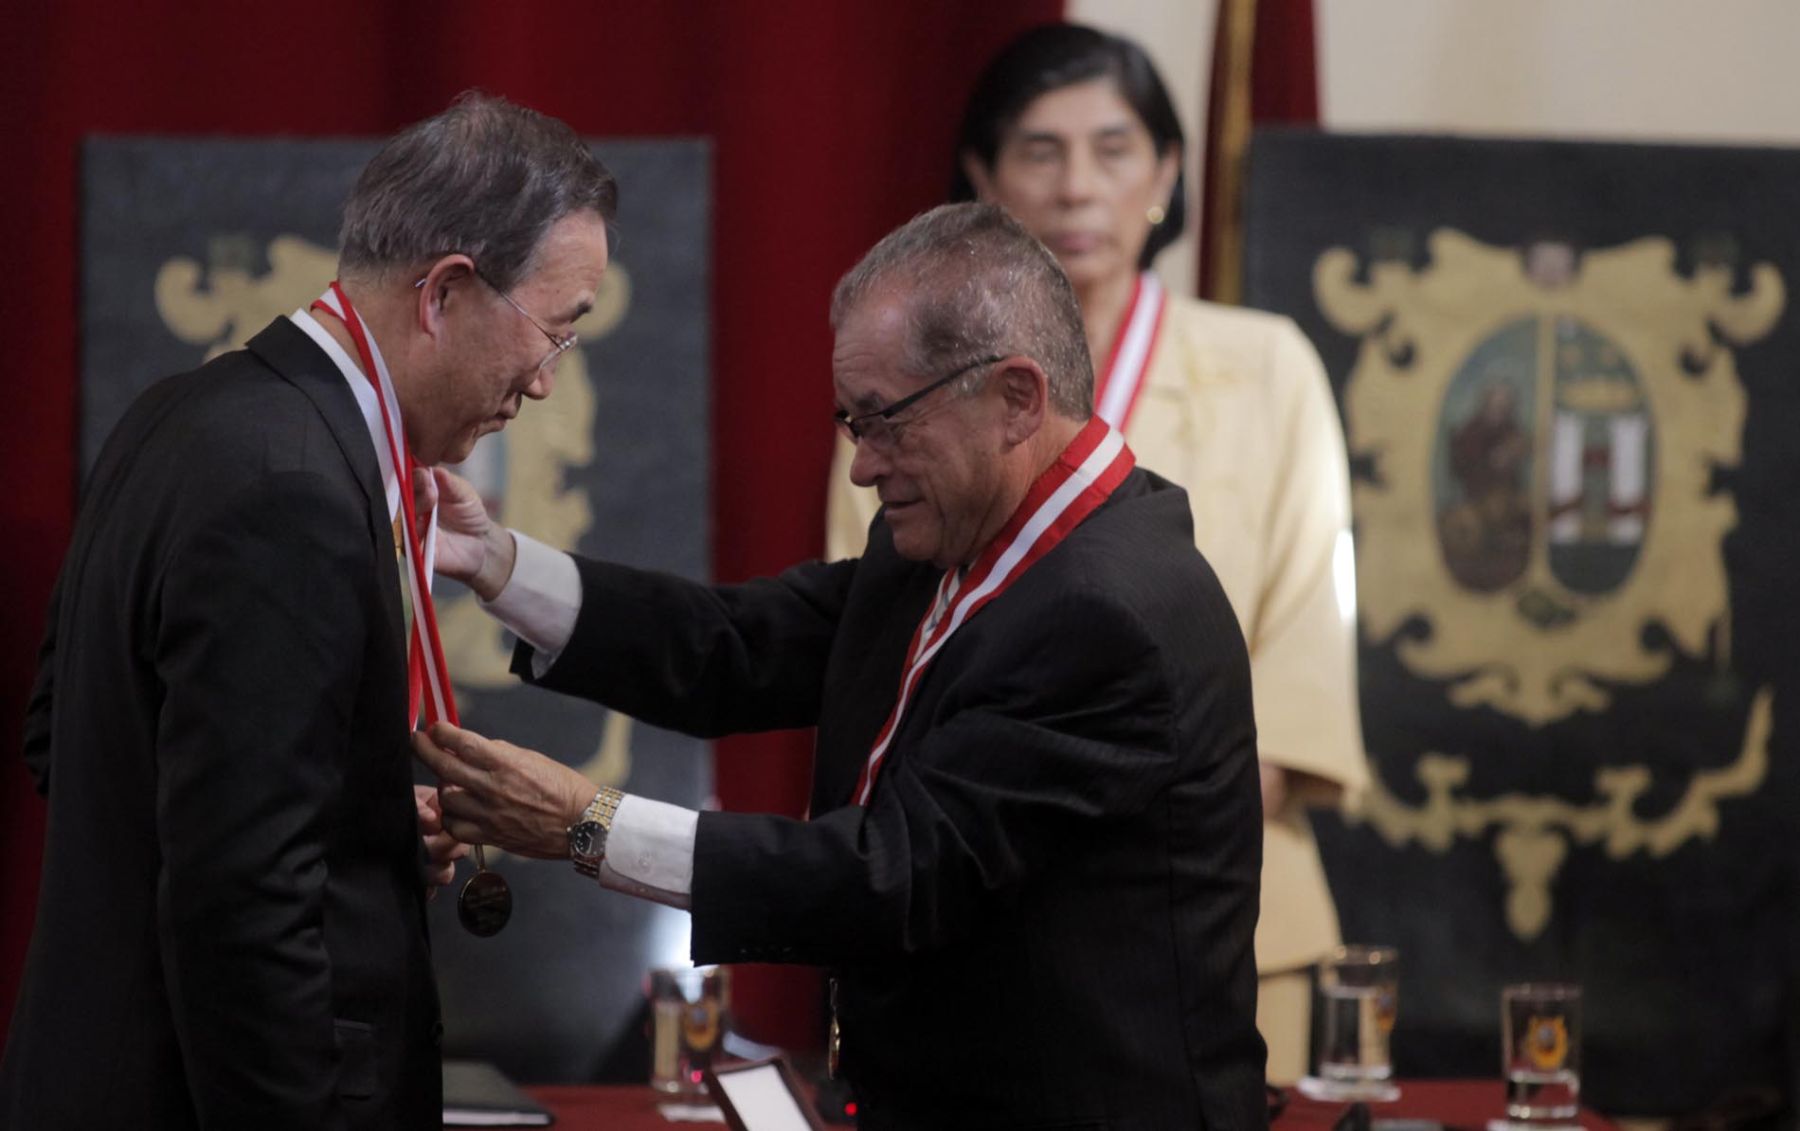 El secretario general de las Naciones Unidas, Ban Ki-moon, fue distinguido con el título de doctor honoris causa por la Universidad Nacional Mayor de San Marcos, en el centro cultural de dicha universidad. Foto: ANDINA/Alberto Orbegoso.